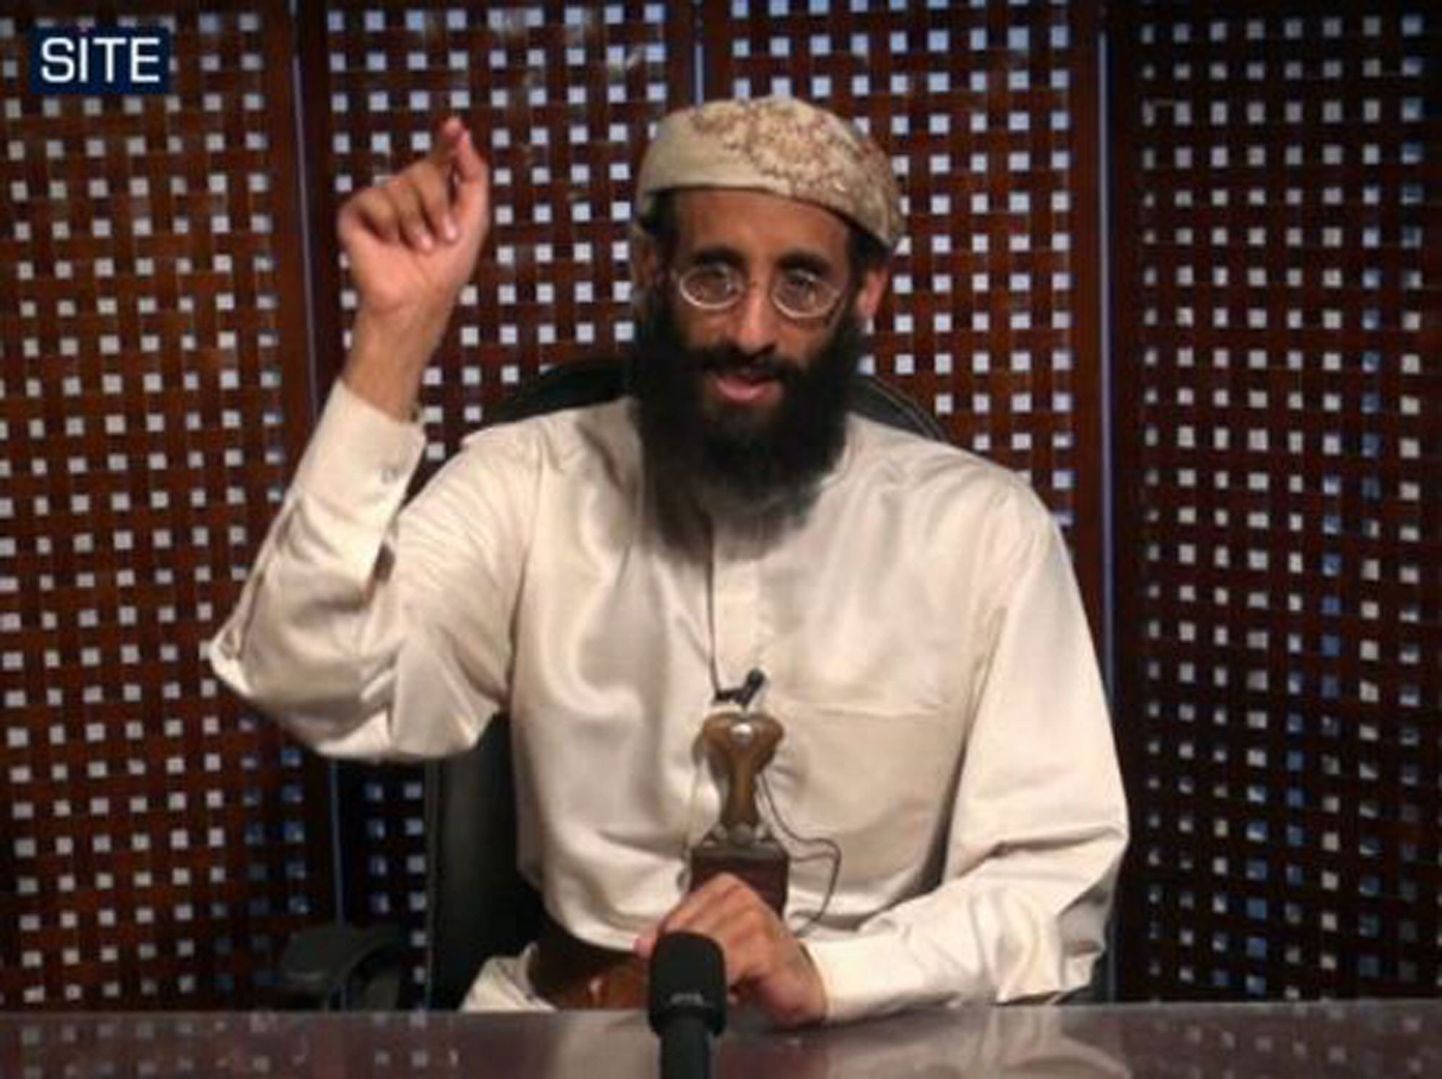 Anwar al-Awlaki